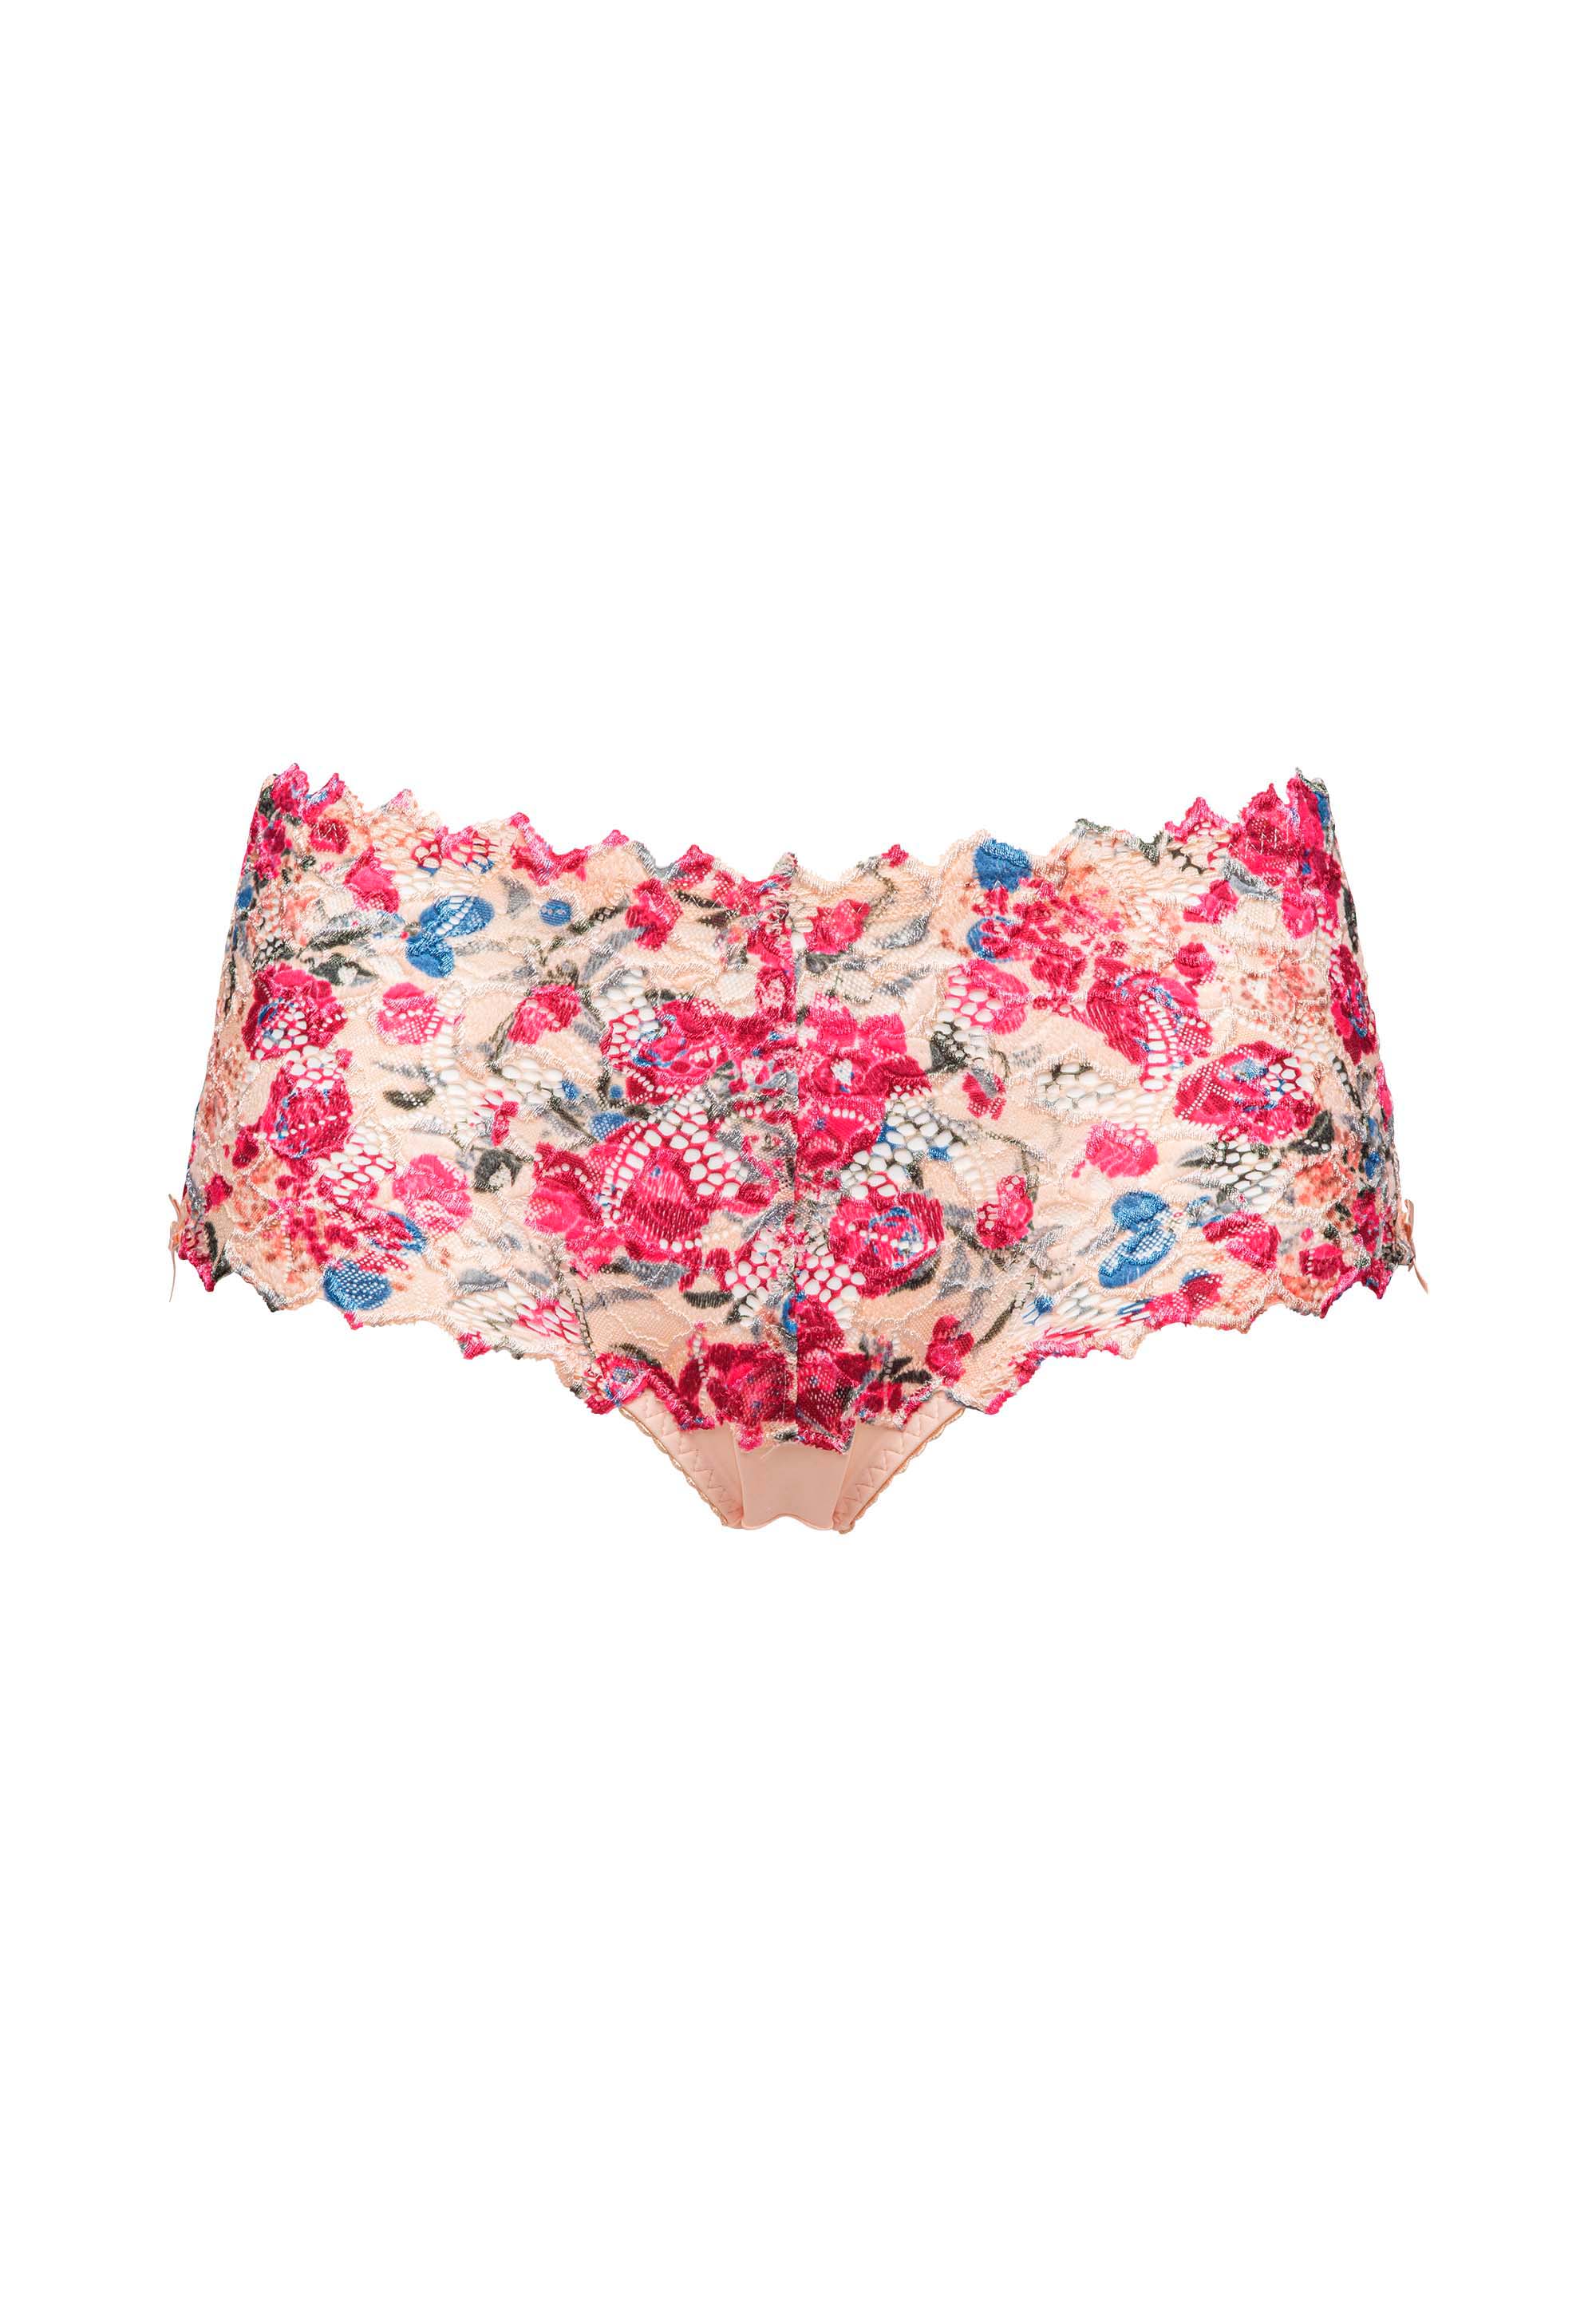 Arum Mosaïc Pastel Floral Print Panties